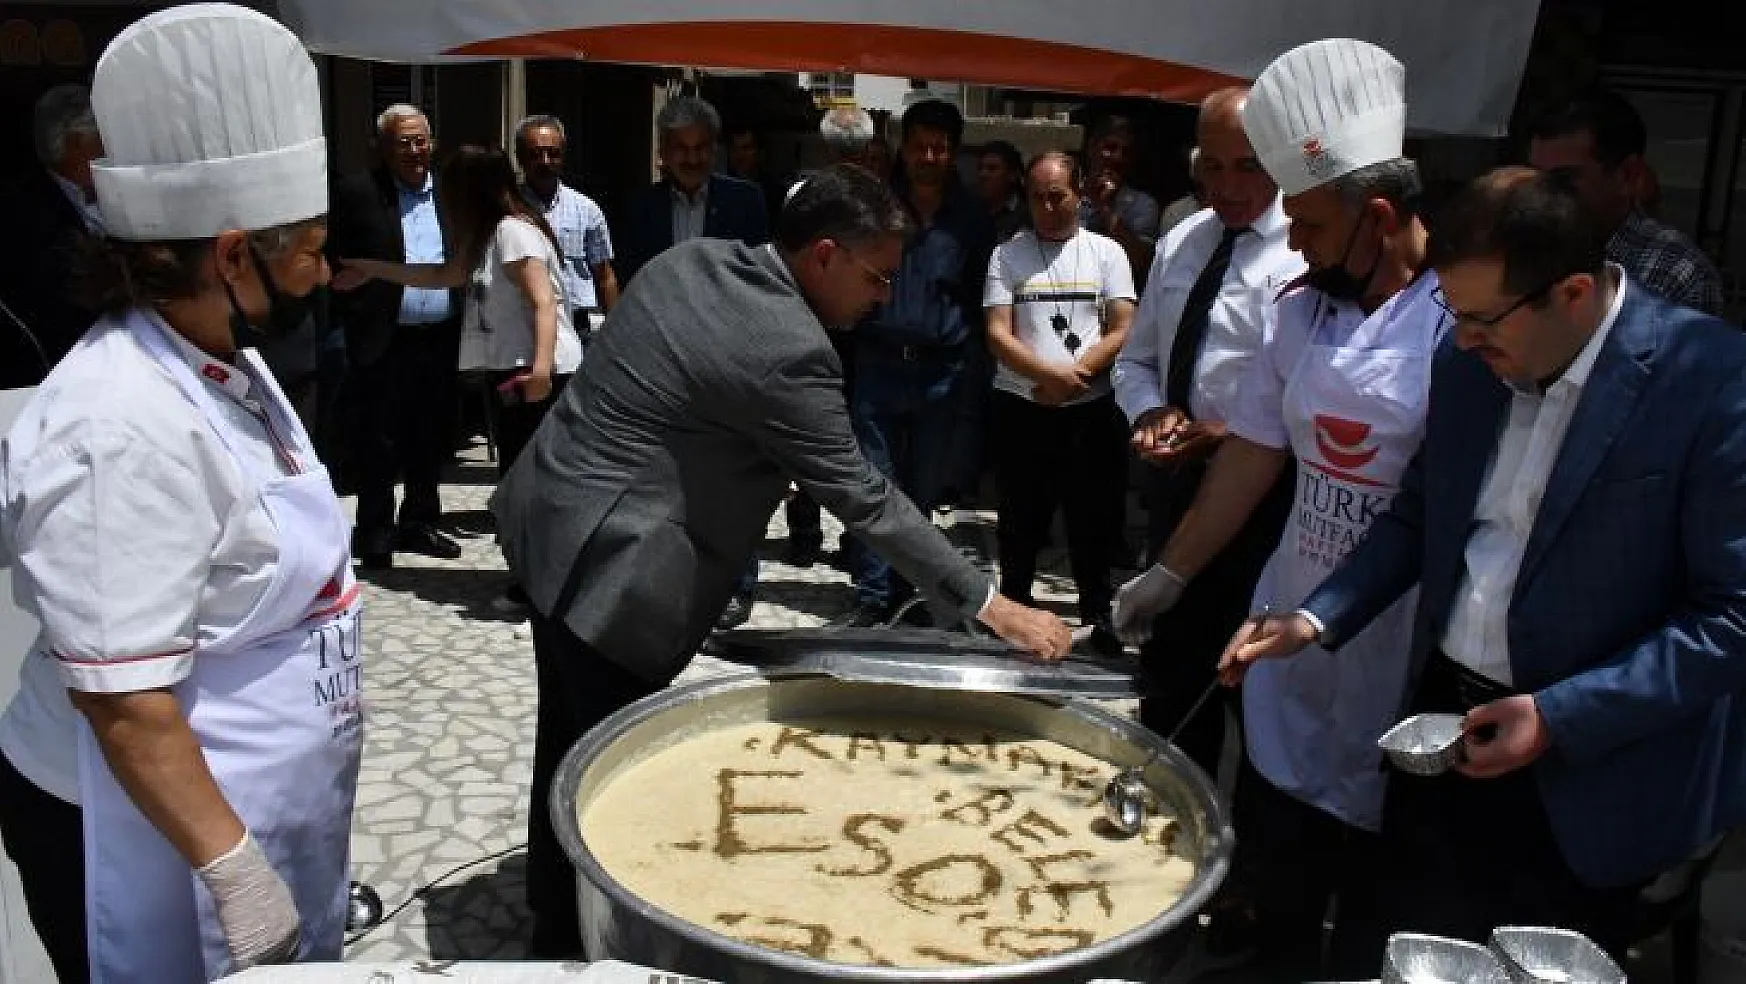 Yatağan'da Türk Mutfağı Haftası etkinlikleri başladı